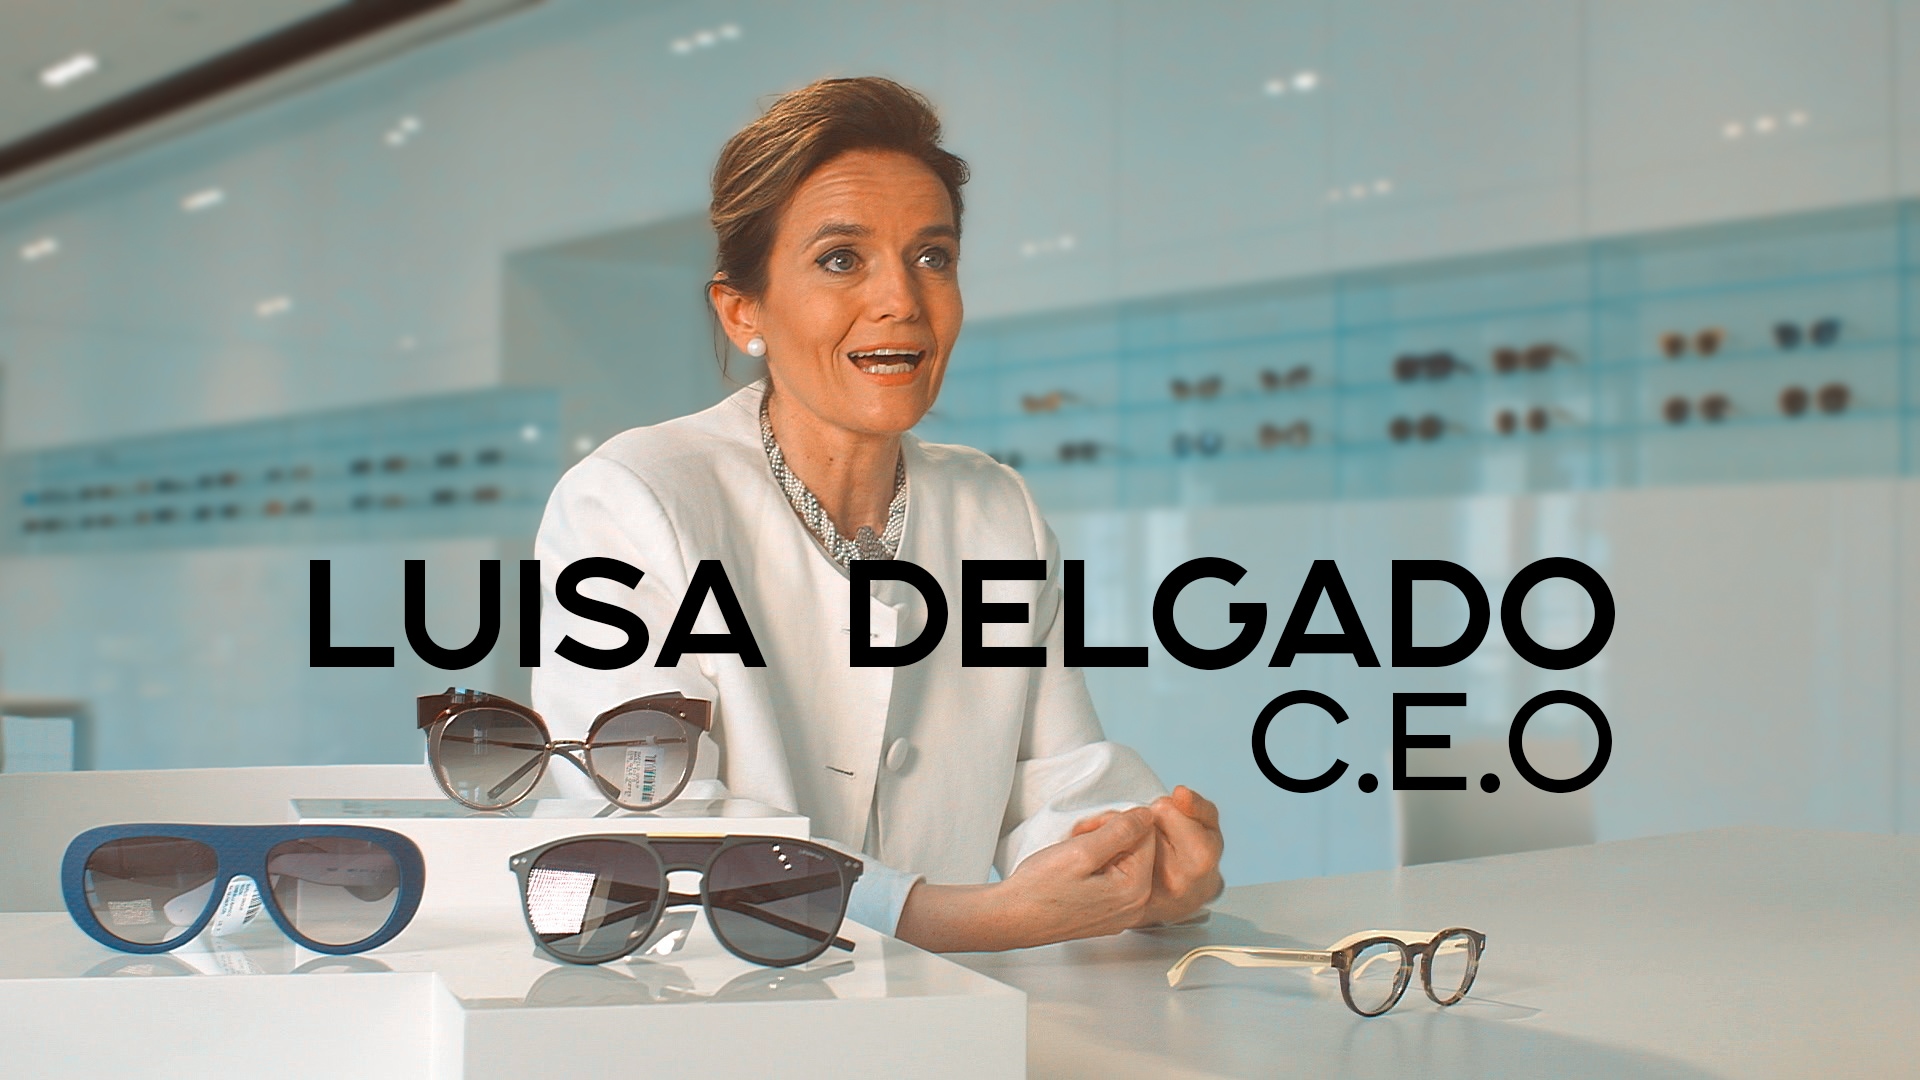 Luisa Delgado, C.E.O